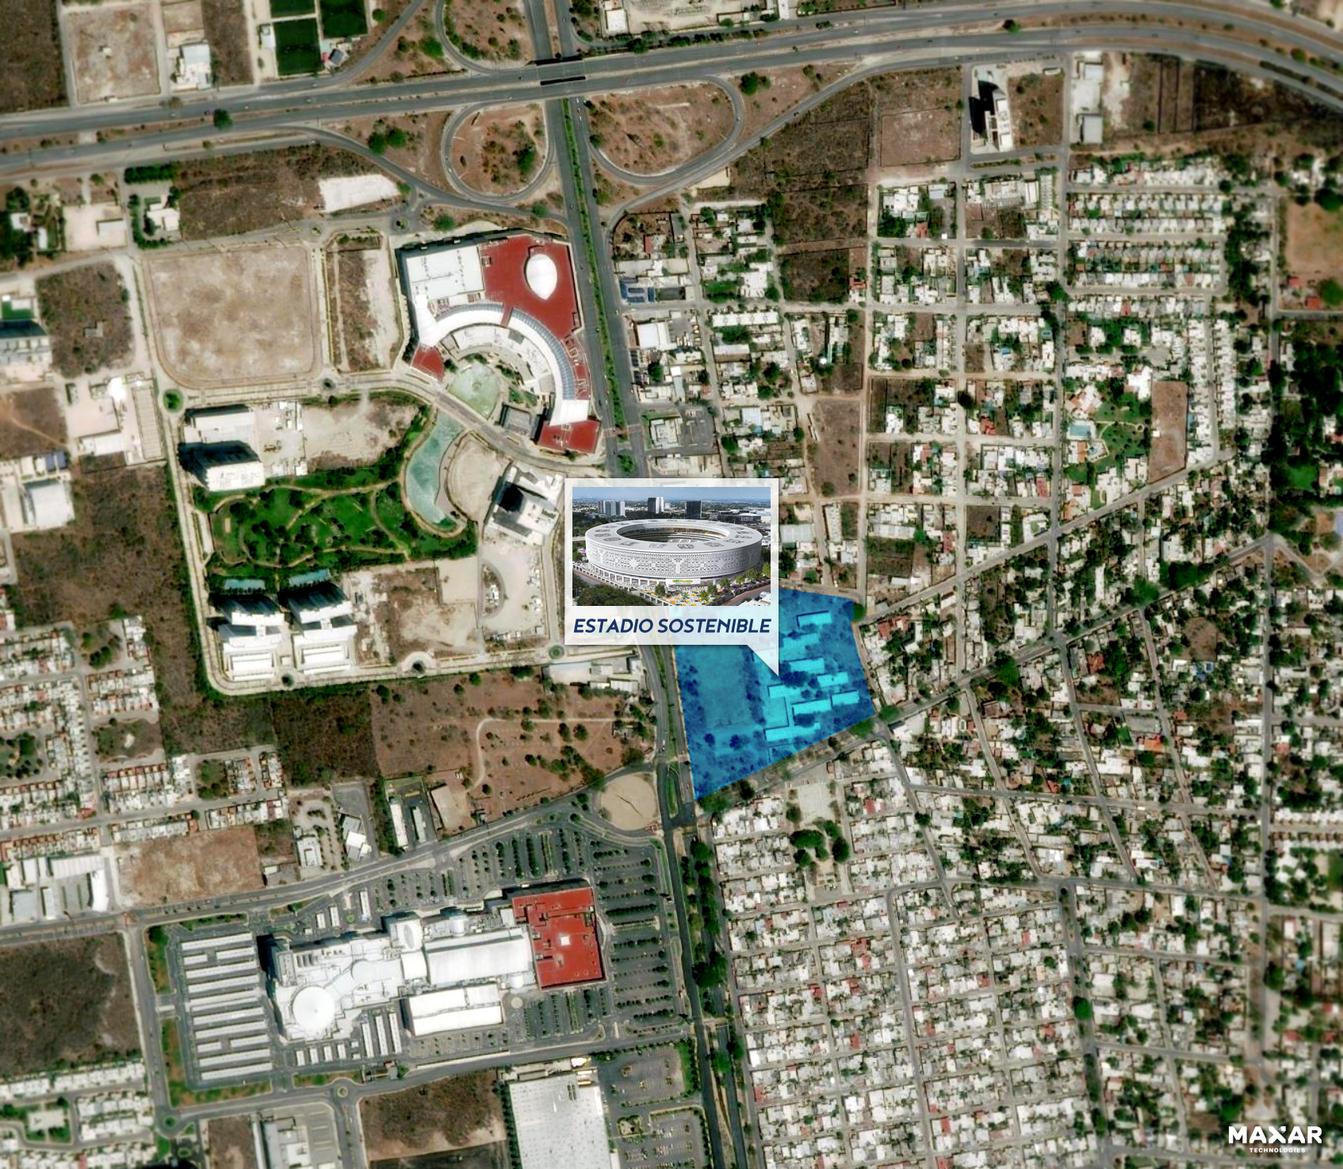 Estadio Sostenible de Yucatan, Merida, Mexico